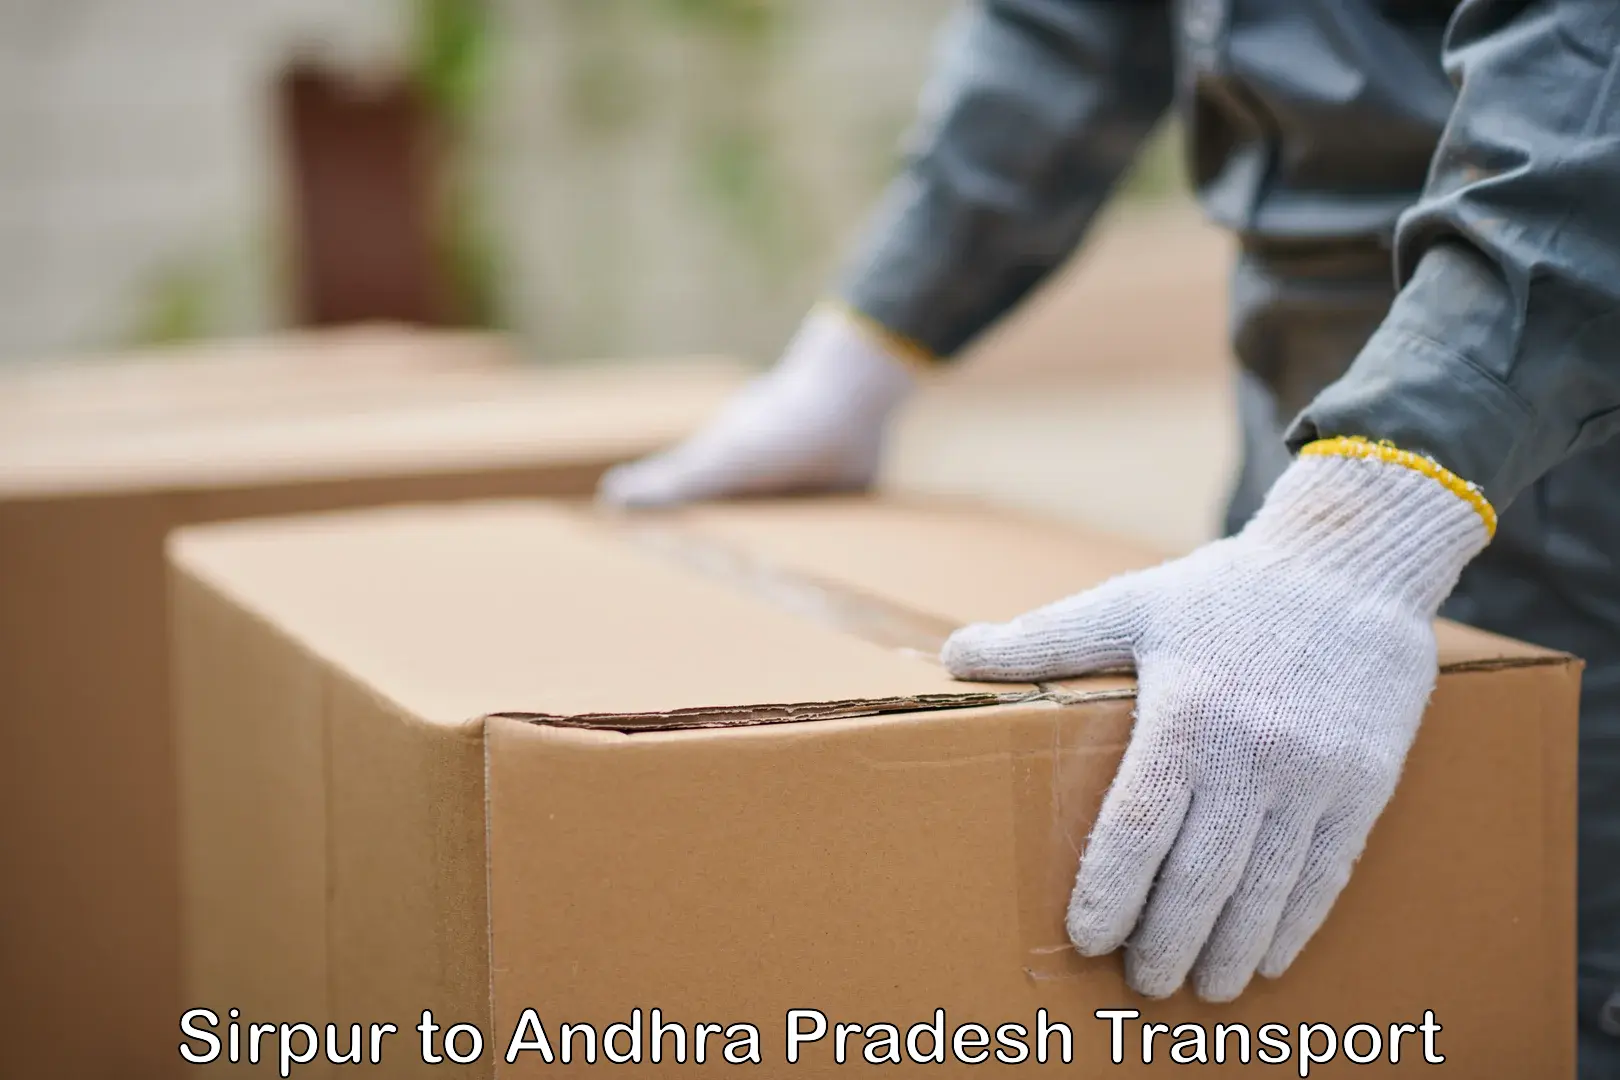 Container transport service Sirpur to Kalyandurg